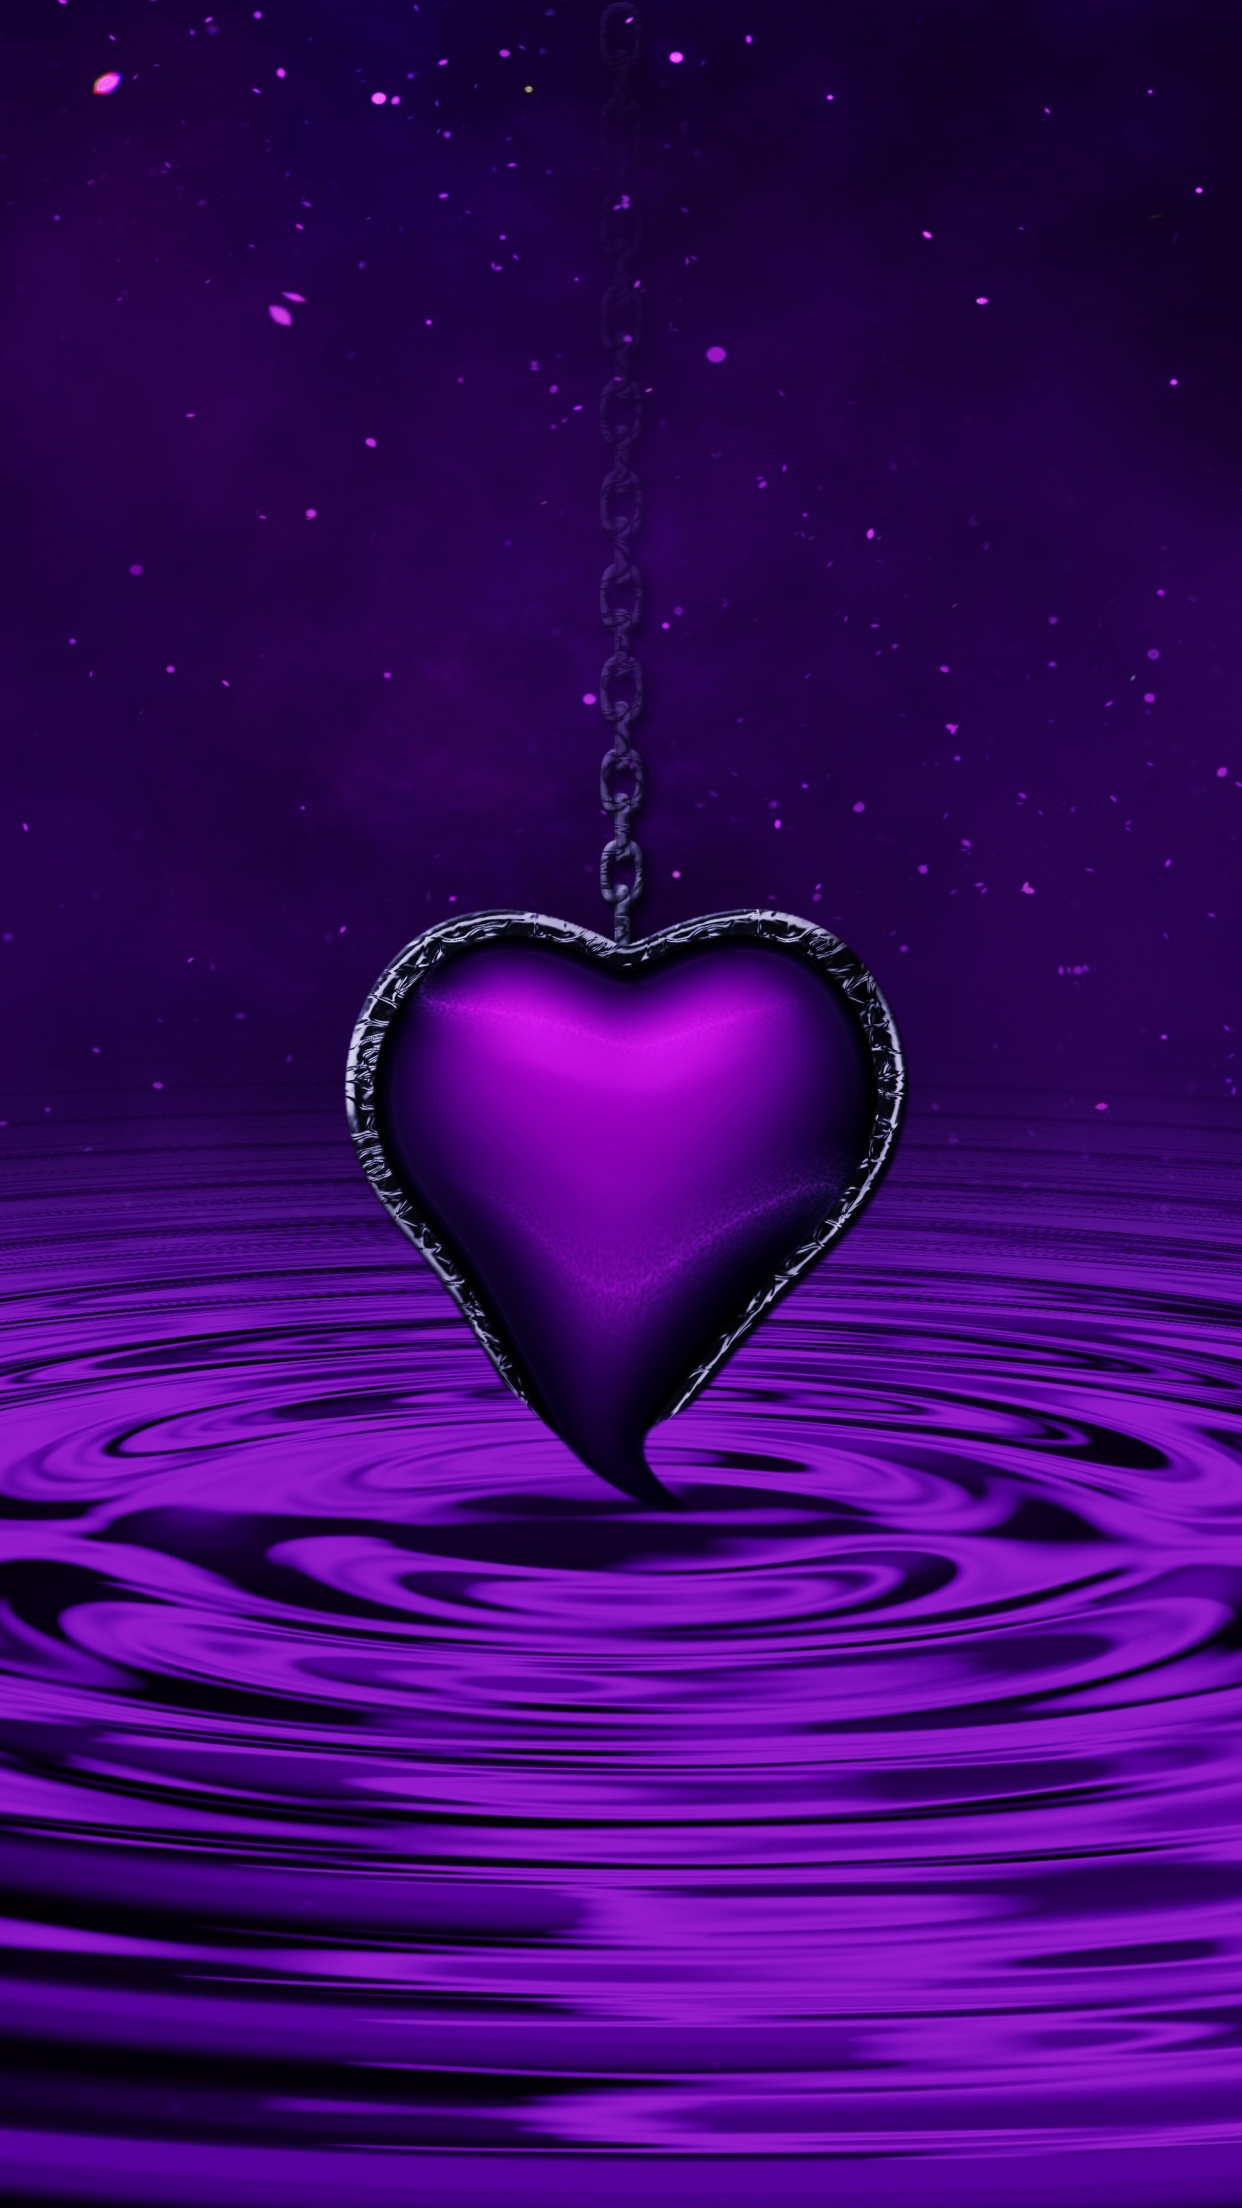 Purple Heart Wallpaper 4K, Water, Waves, Stars, Chain, Purple